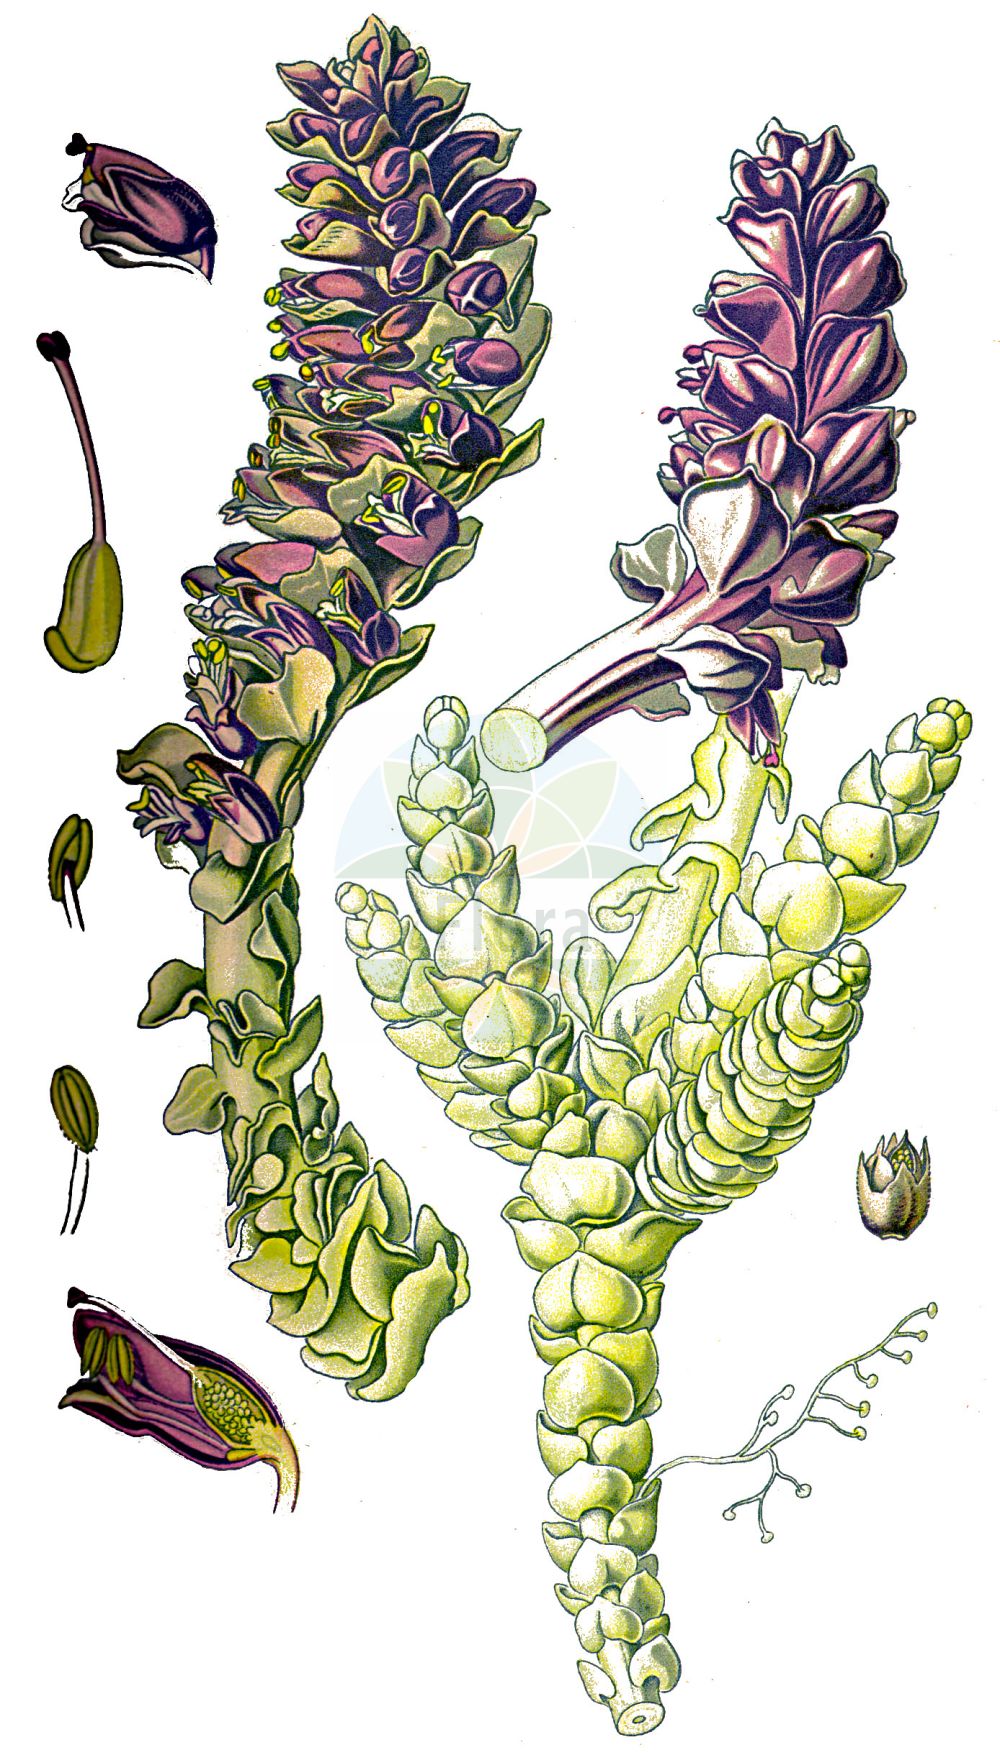 Historische Abbildung von Lathraea squamaria (Gewöhnliche Schuppenwurz - Toothwort). Das Bild zeigt Blatt, Bluete, Frucht und Same. ---- Historical Drawing of Lathraea squamaria (Gewöhnliche Schuppenwurz - Toothwort). The image is showing leaf, flower, fruit and seed.(Lathraea squamaria,Gewöhnliche Schuppenwurz,Toothwort,Lathraea squamaria,Gewoehnliche Schuppenwurz,Fichten-Schuppenwurz,Tatra-Schuppenwurz,Toothwort,Common Toothwort,Corpse Flower,Lathraea,Schuppenwurz,Toothwort,Orobanchaceae,Sommerwurzgewächse,Broomrape family,Blatt,Bluete,Frucht,Same,leaf,flower,fruit,seed,Thomé (1885))